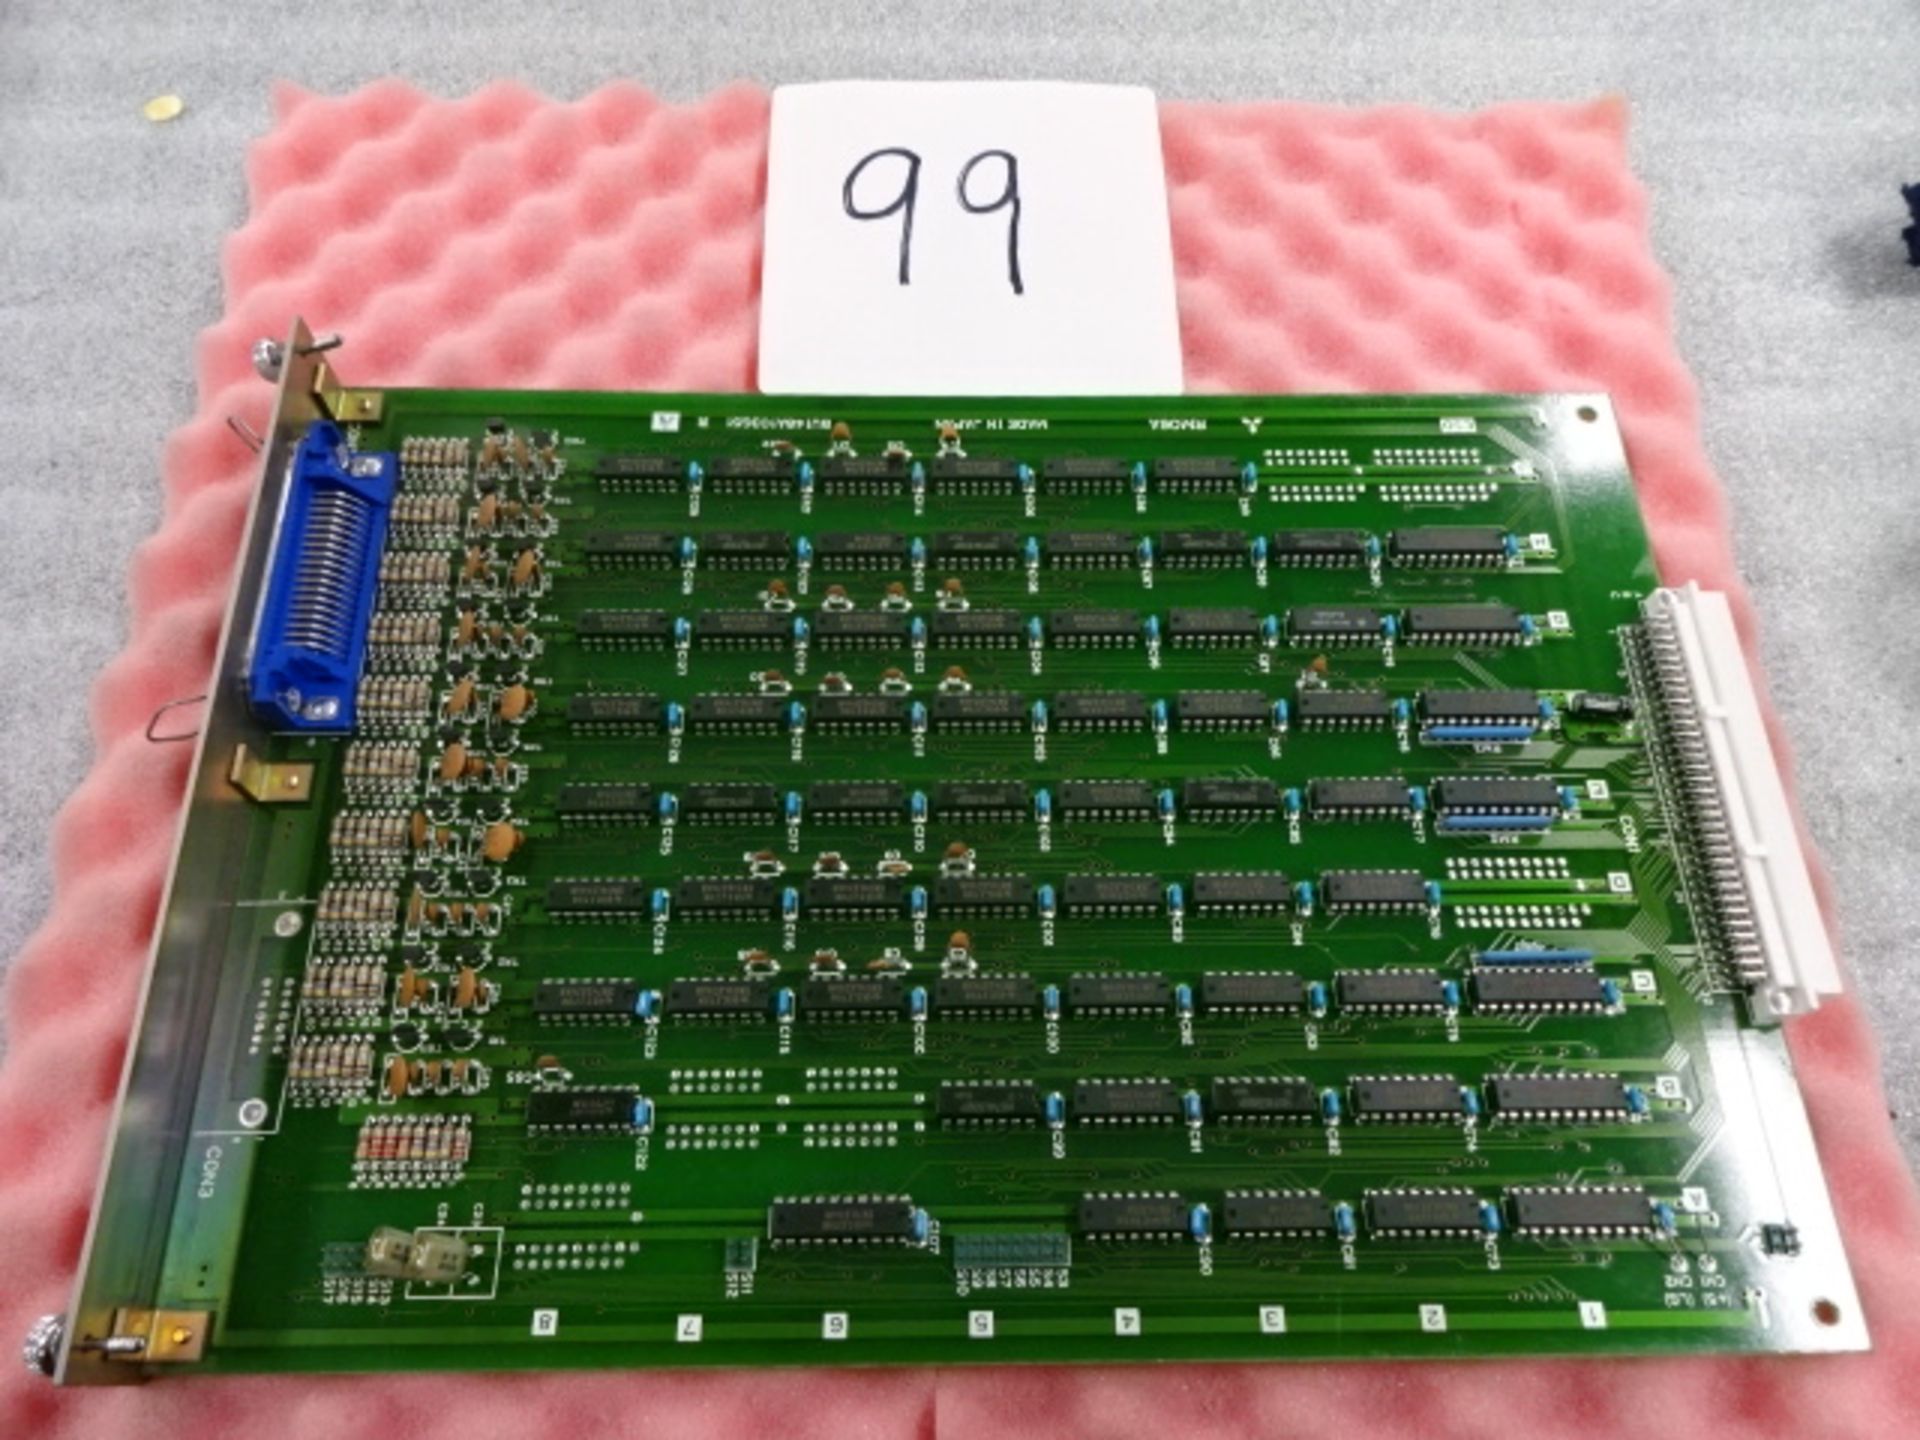 Circuit Imprimé - Electronic Board